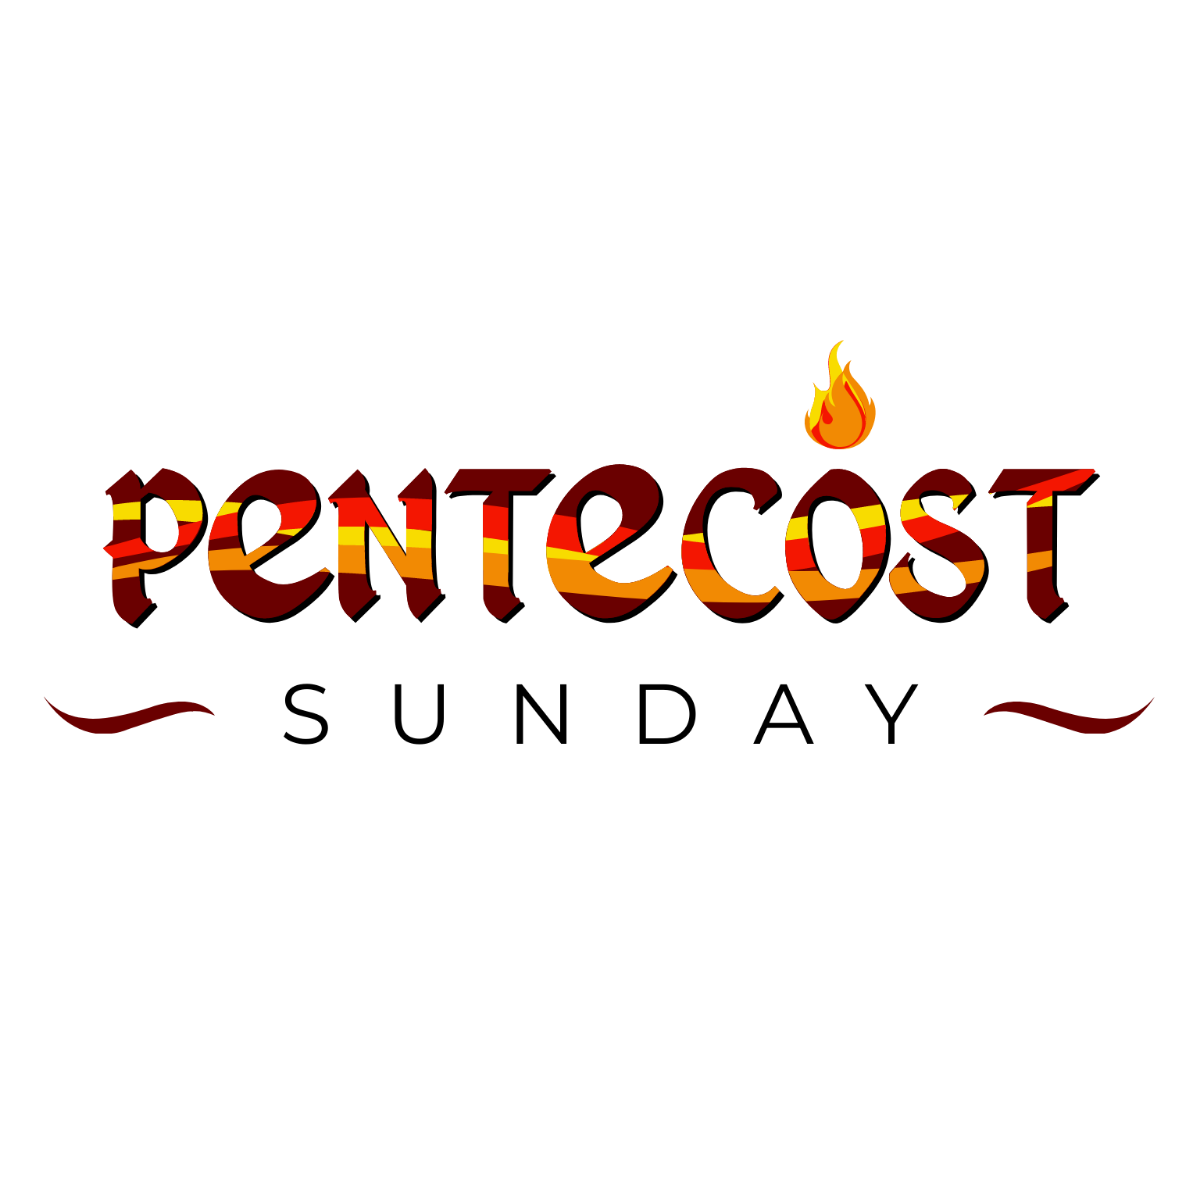 Pentecost Sunday Text Effect Template